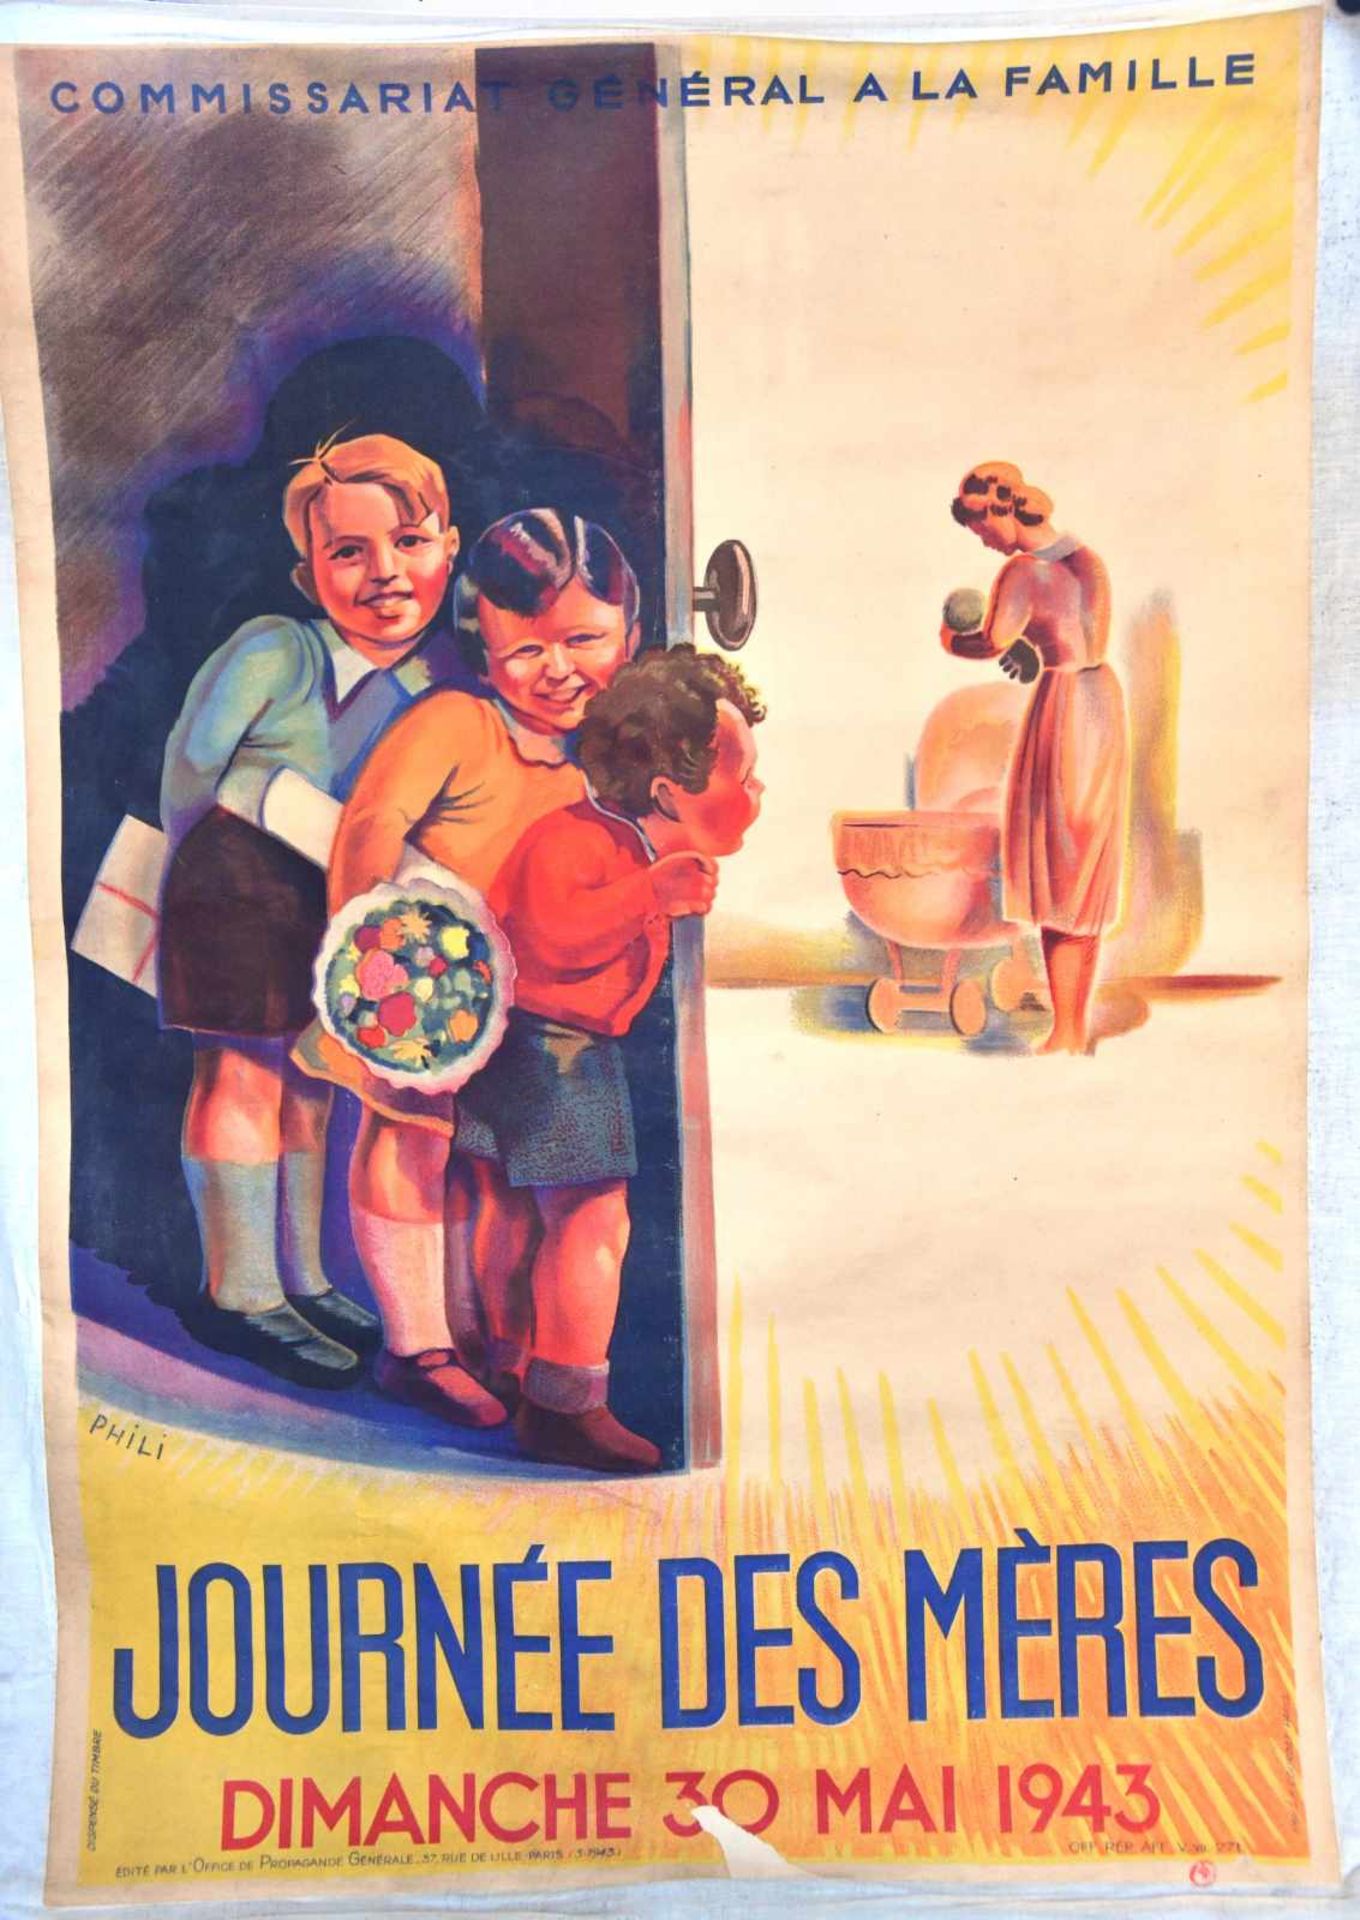 Affiche du Commissariat général de la Famille : Journée des mères, dimanche 30 mai 1943, illustrée